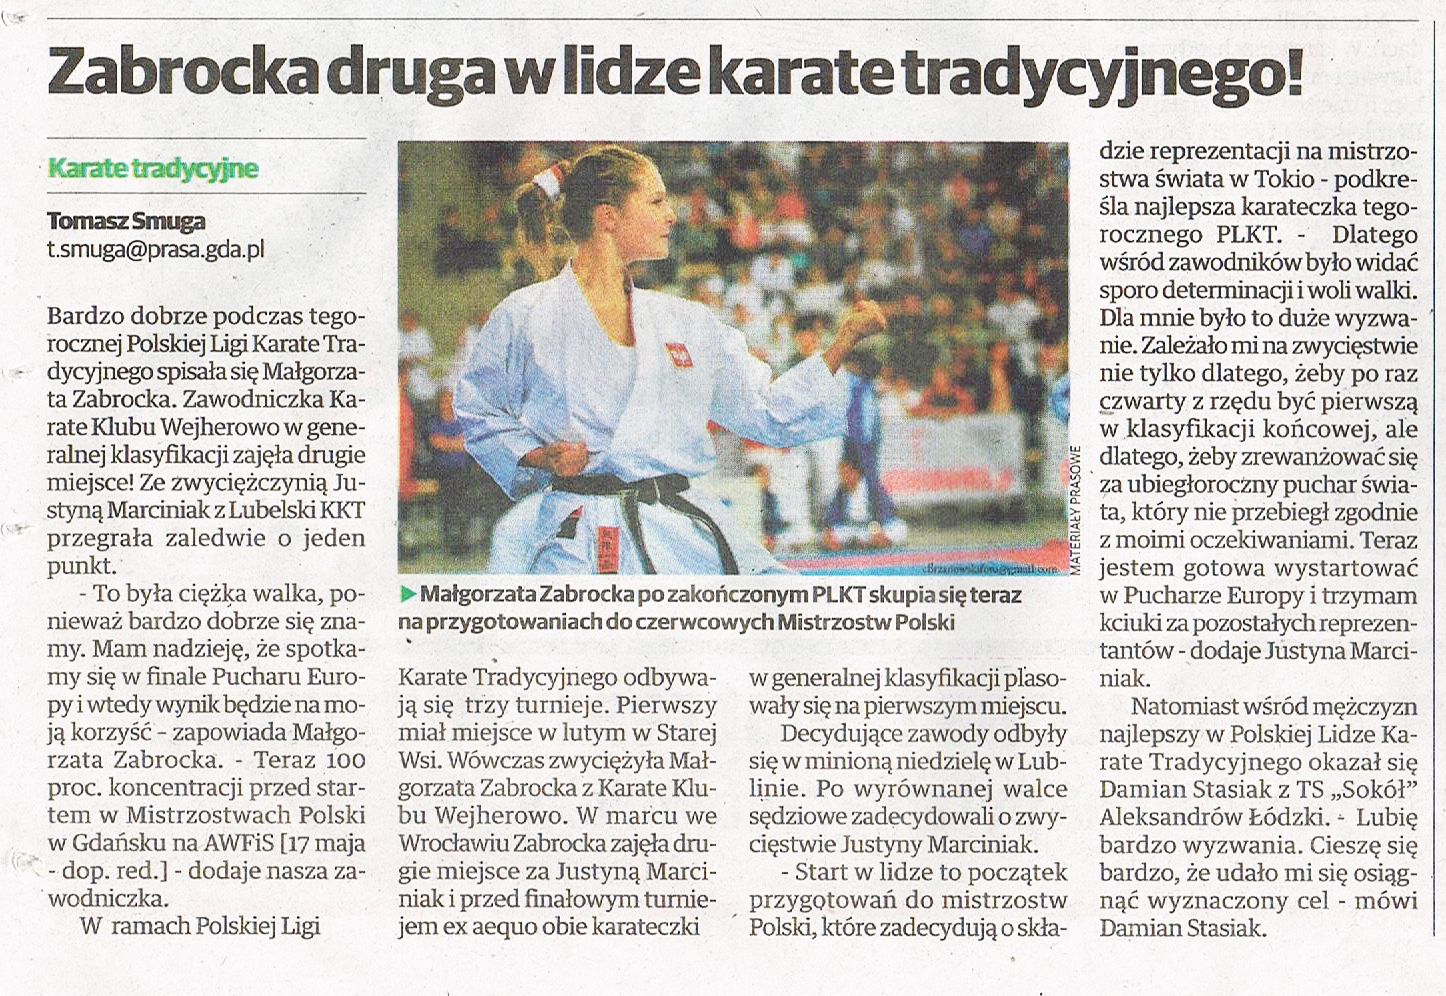 Małgorzata Zabrocka druga w lidze karate tradycyjnego!